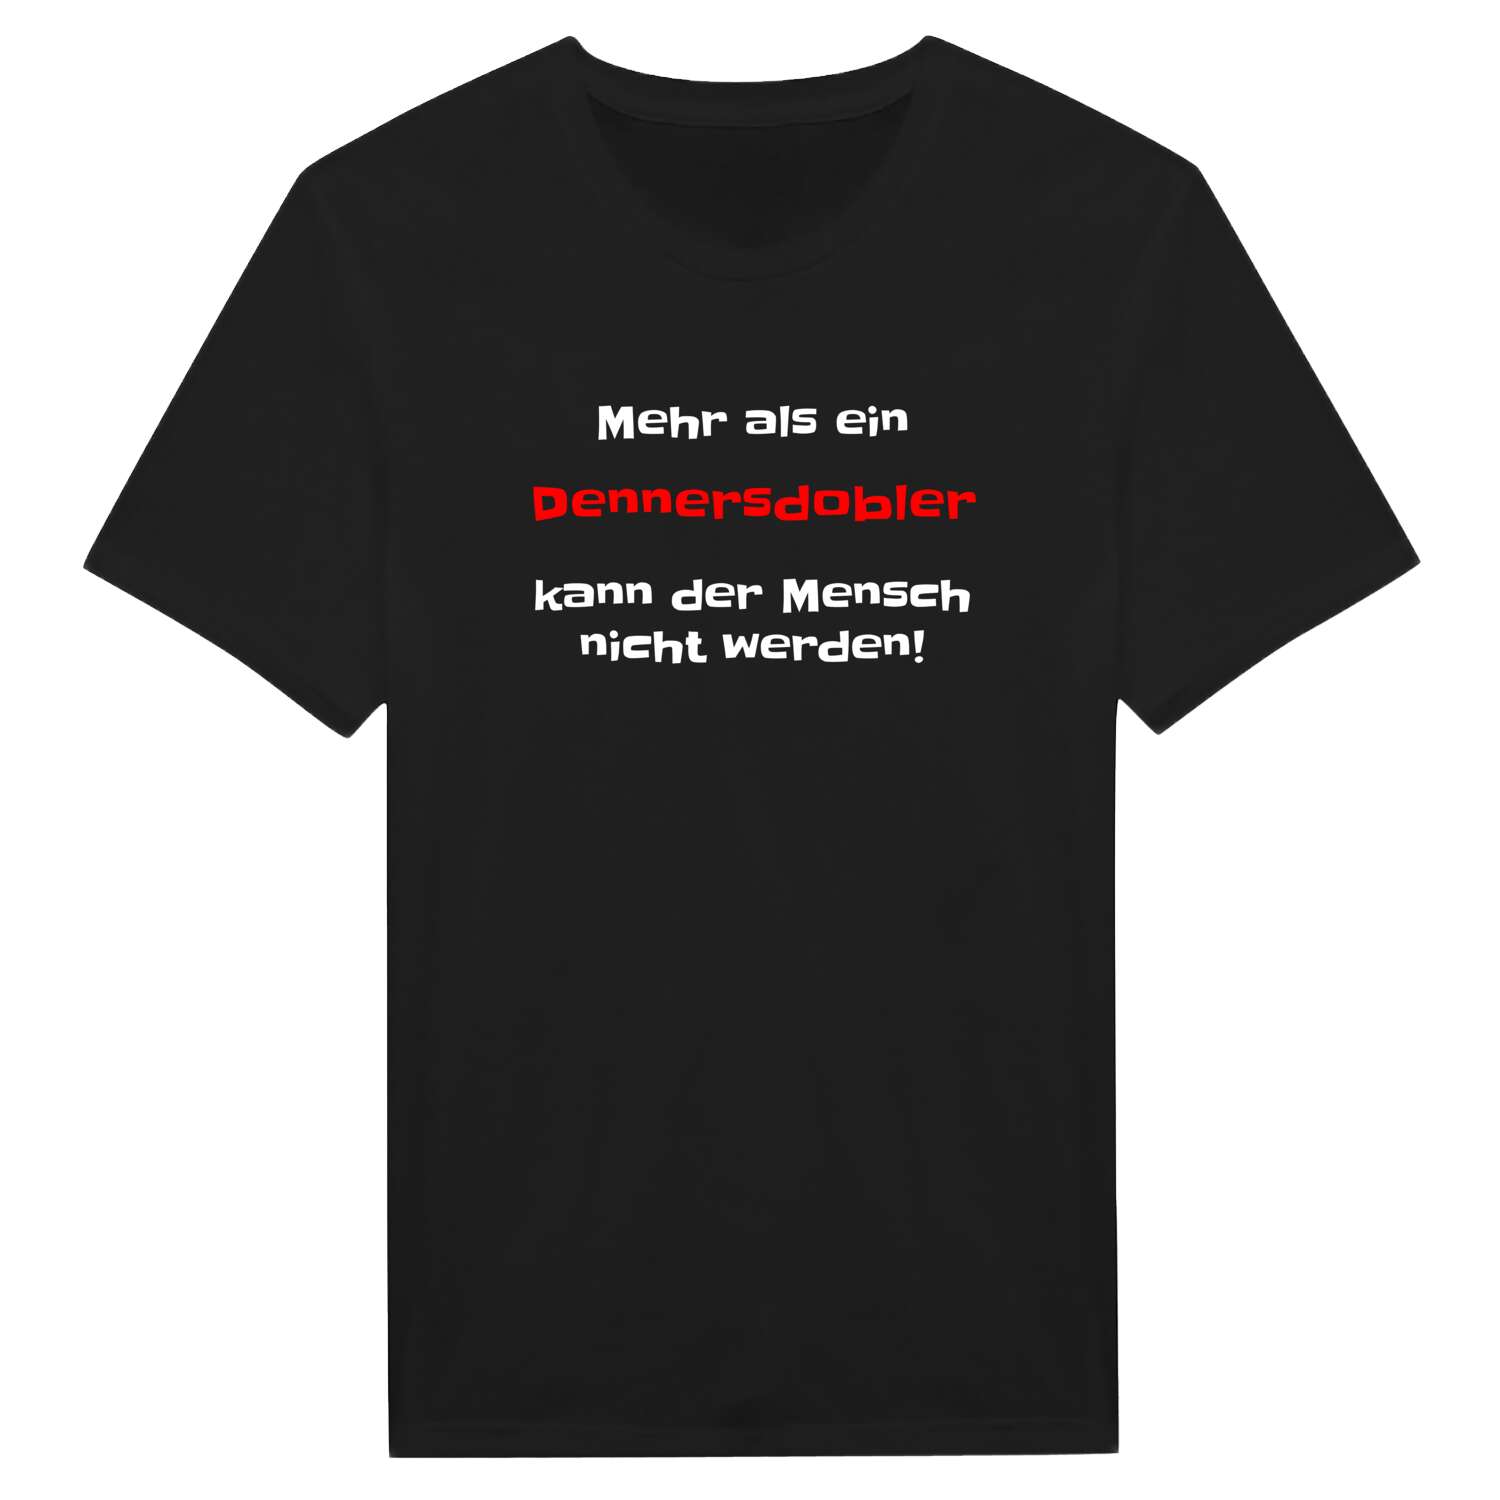 Dennersdobl T-Shirt »Mehr als ein«